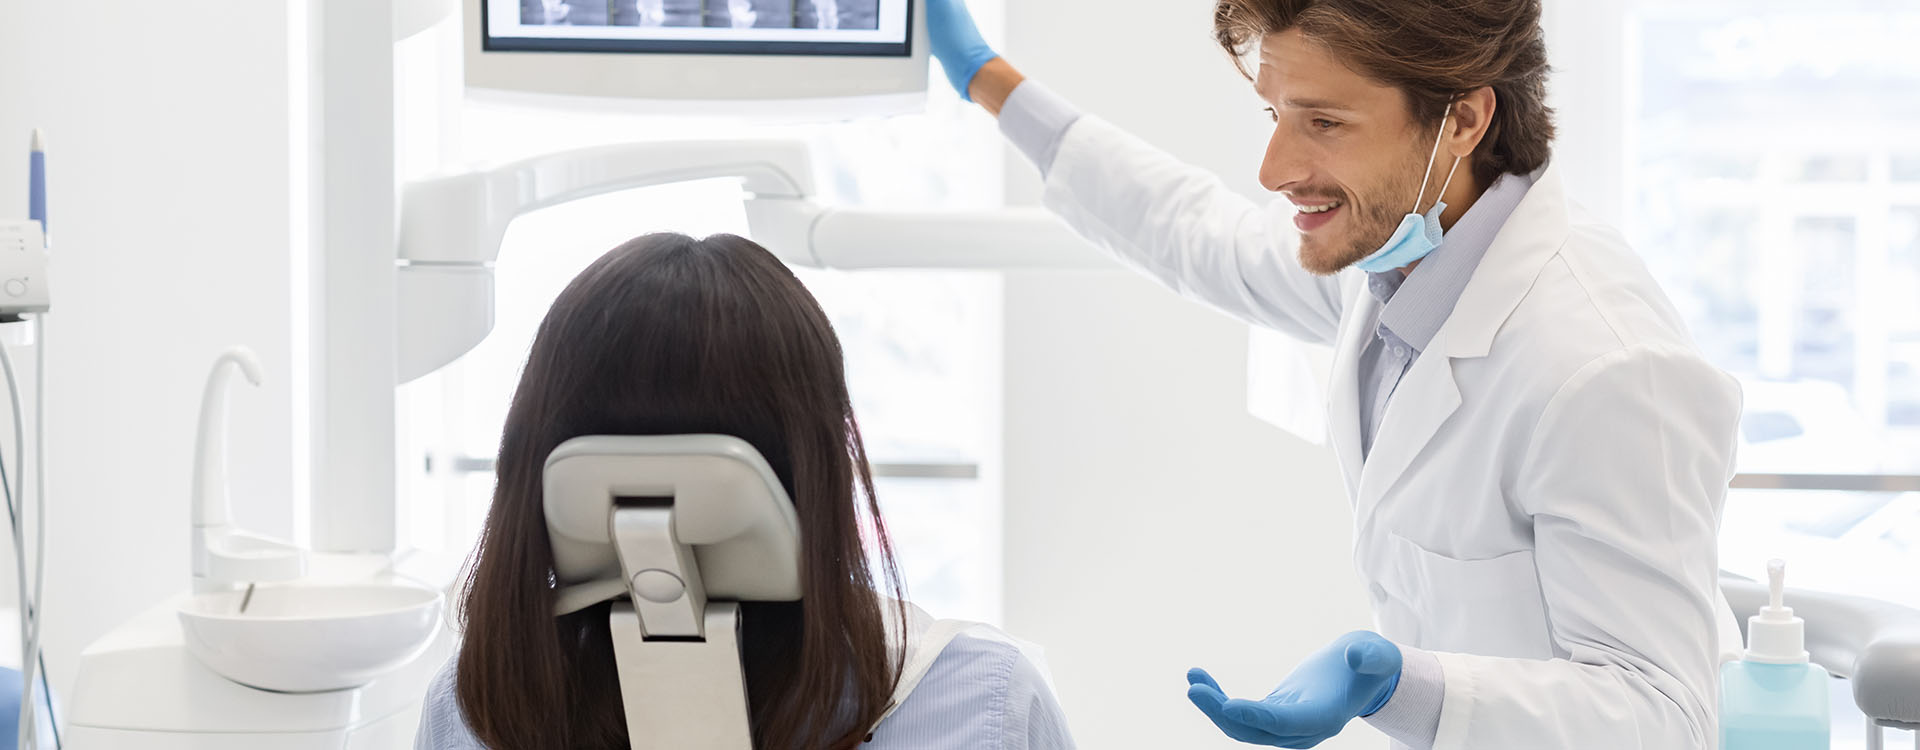 Clínica Dental Andrea Compte, tu Centro Odontológico especializado. Odontología en Cervera del Maestre. Dentista muestra los resultados de las radiografías.